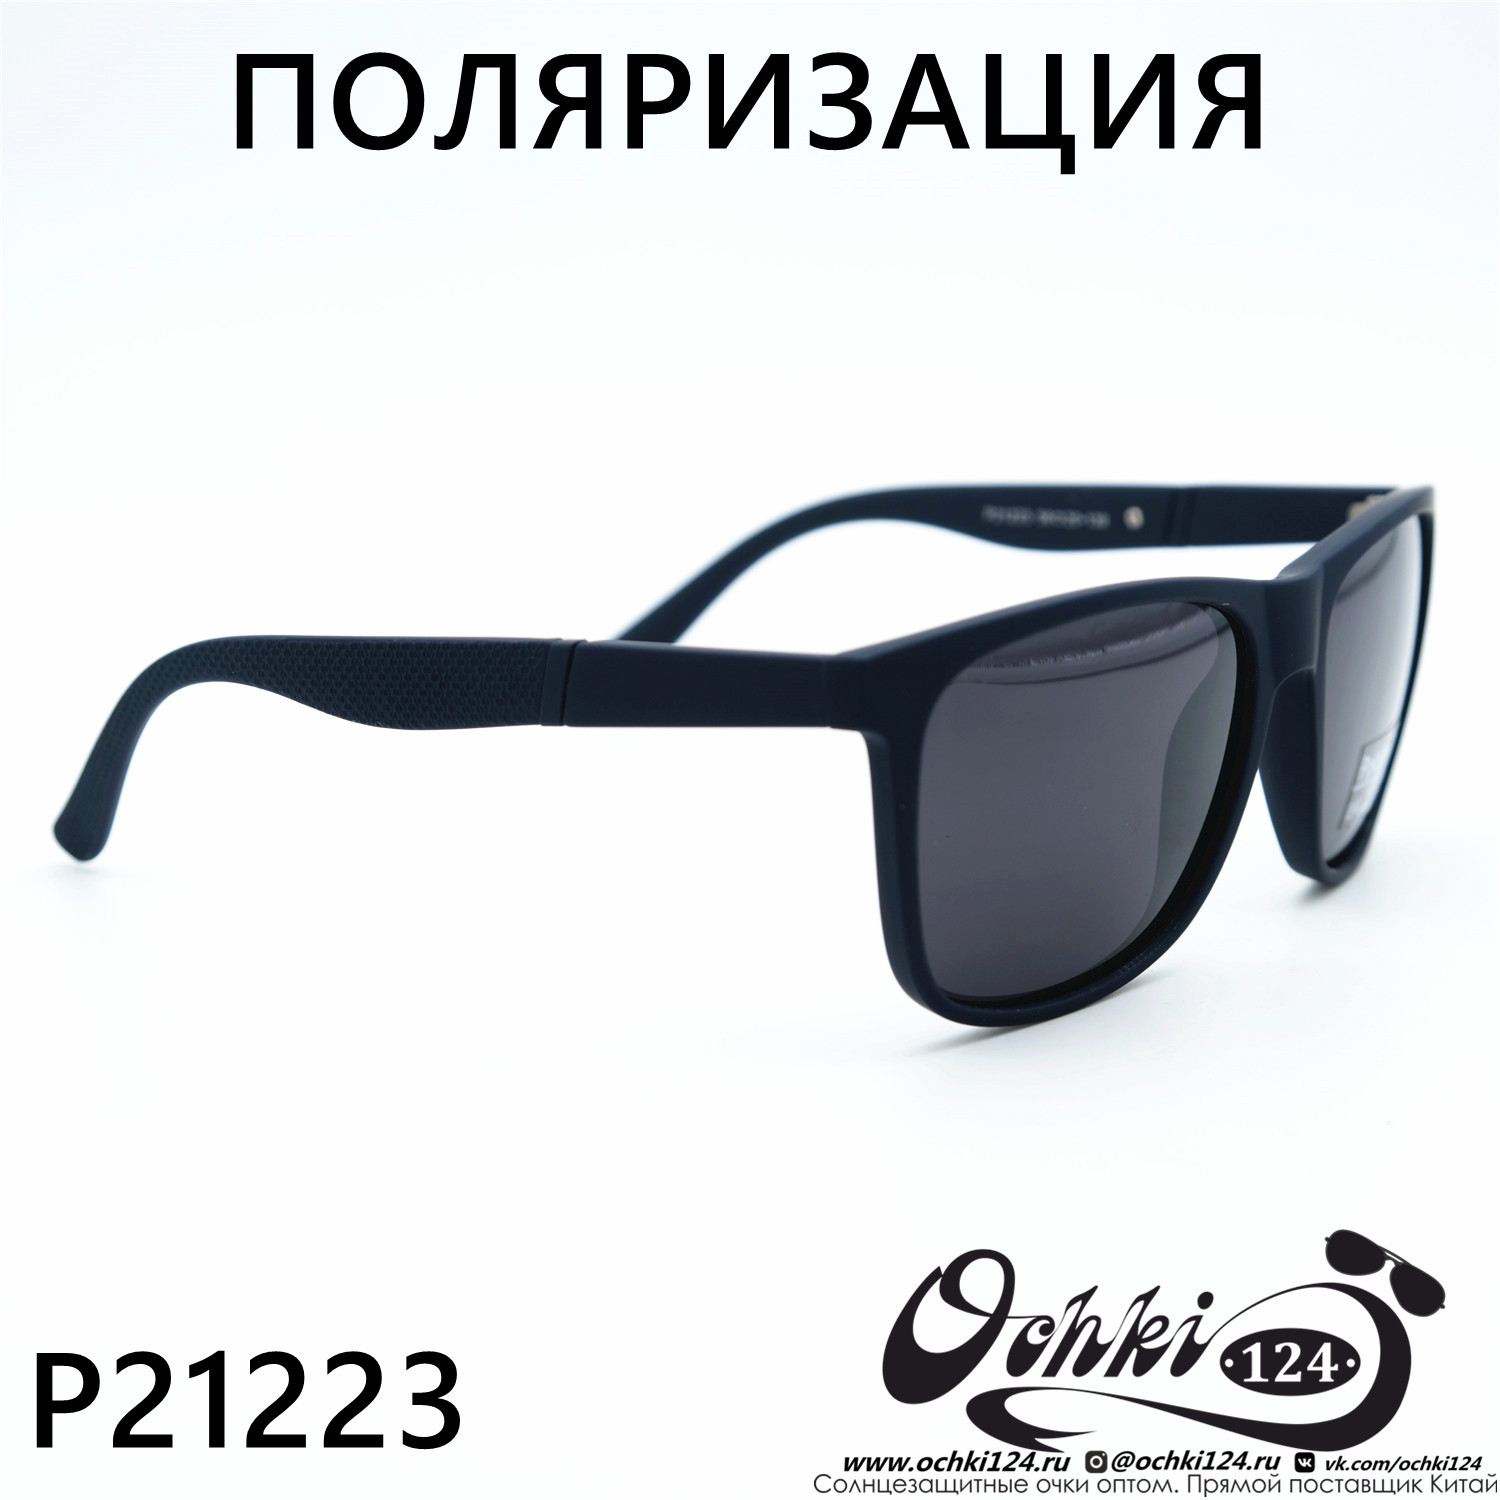  Солнцезащитные очки картинка 2023 Мужские Стандартные Polarized P21223-C4 